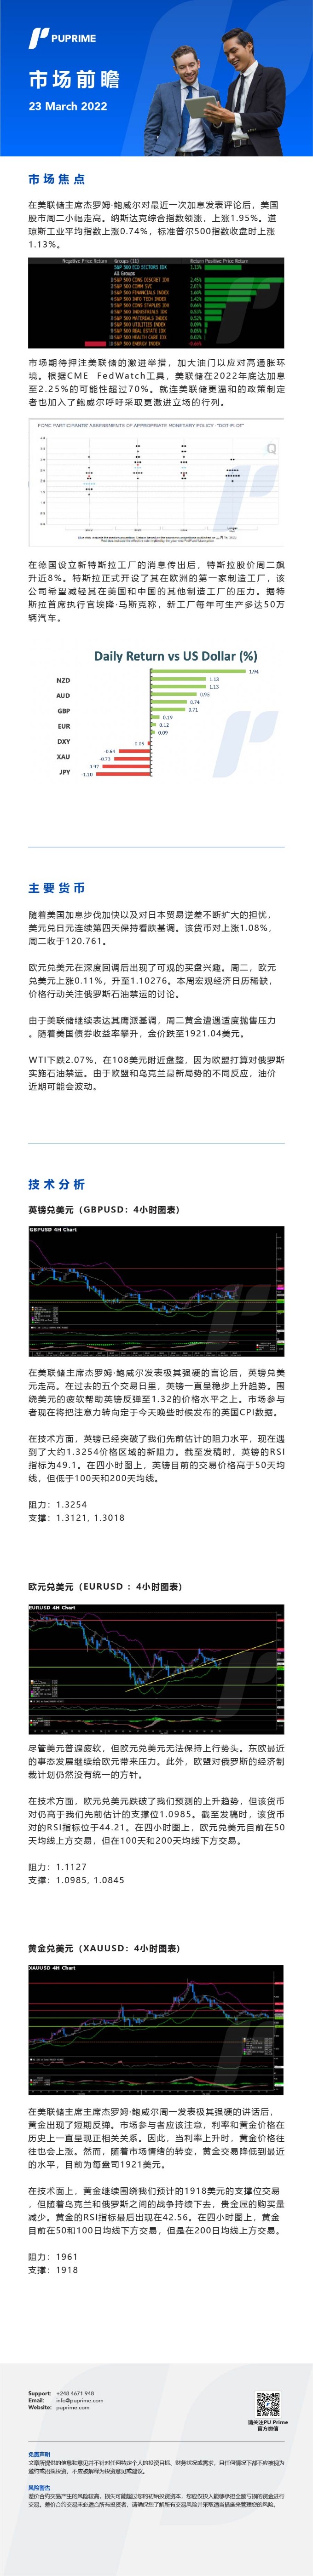 23032022 Daily market analysis__CHN.jpg